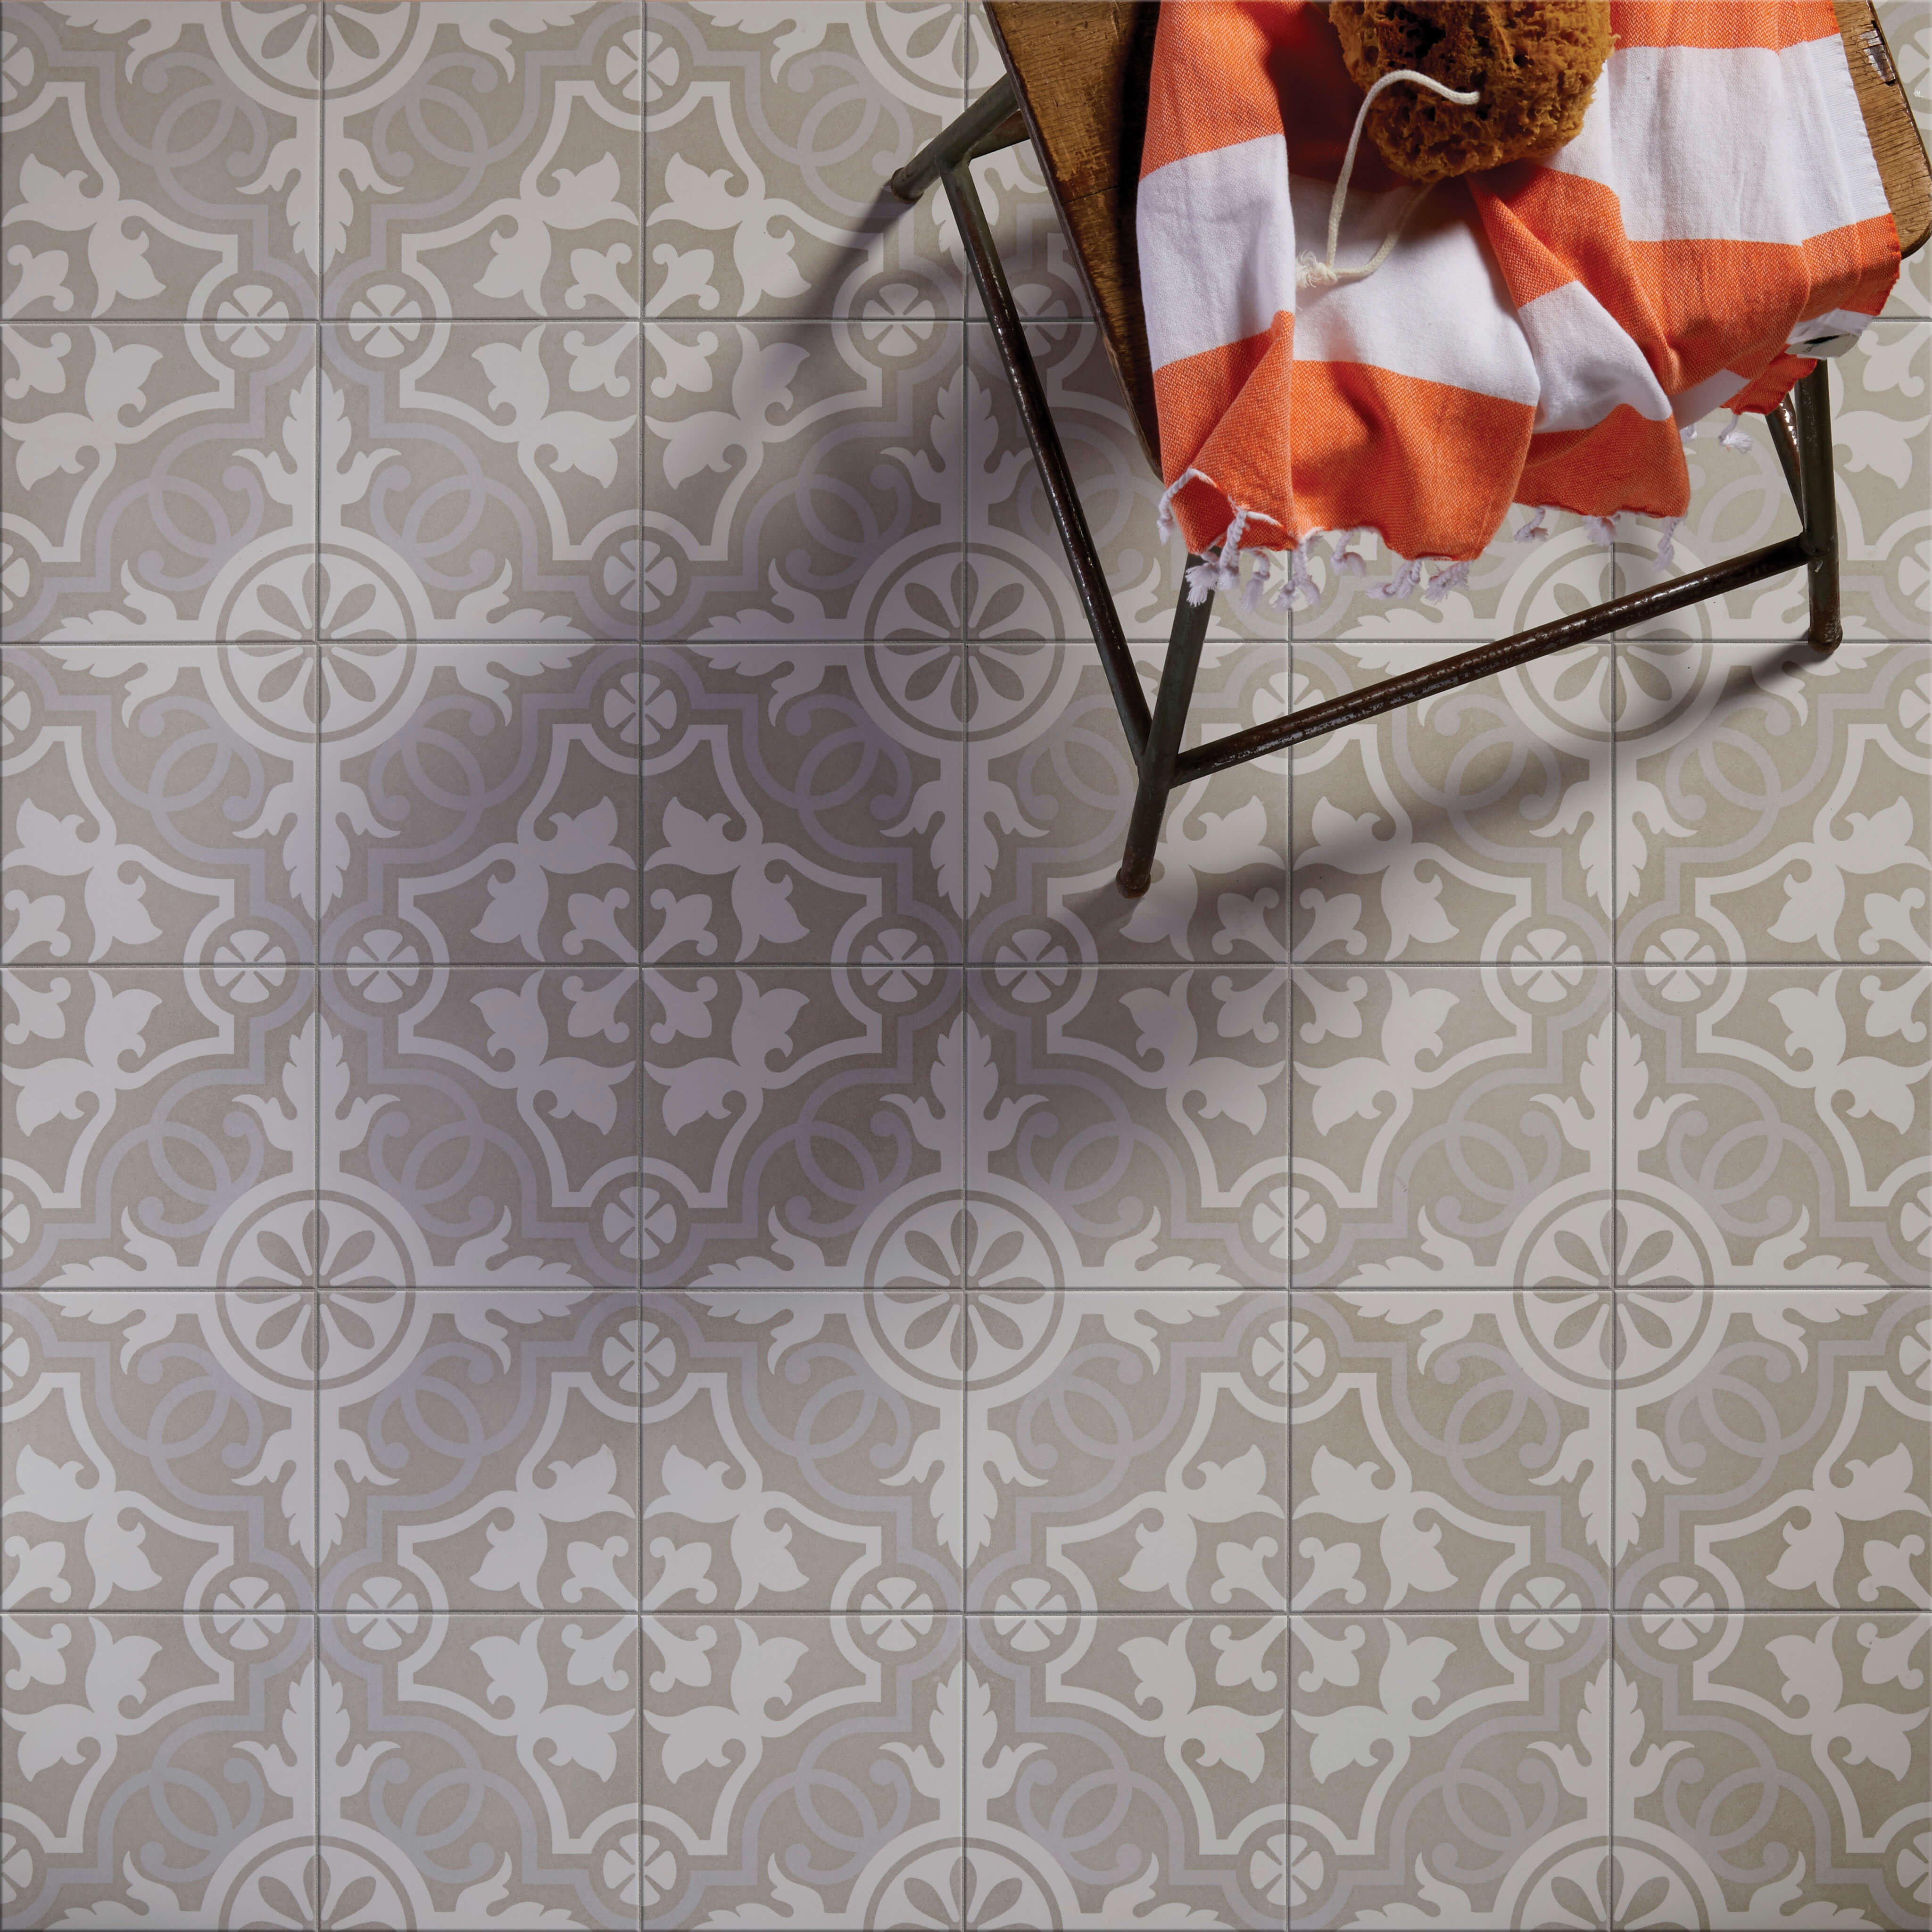 CaPietra Parisian Chic Porcelain Floor & Wall Tile (Matt Finish) Lilas 200 x 200 x 8mm [7333]